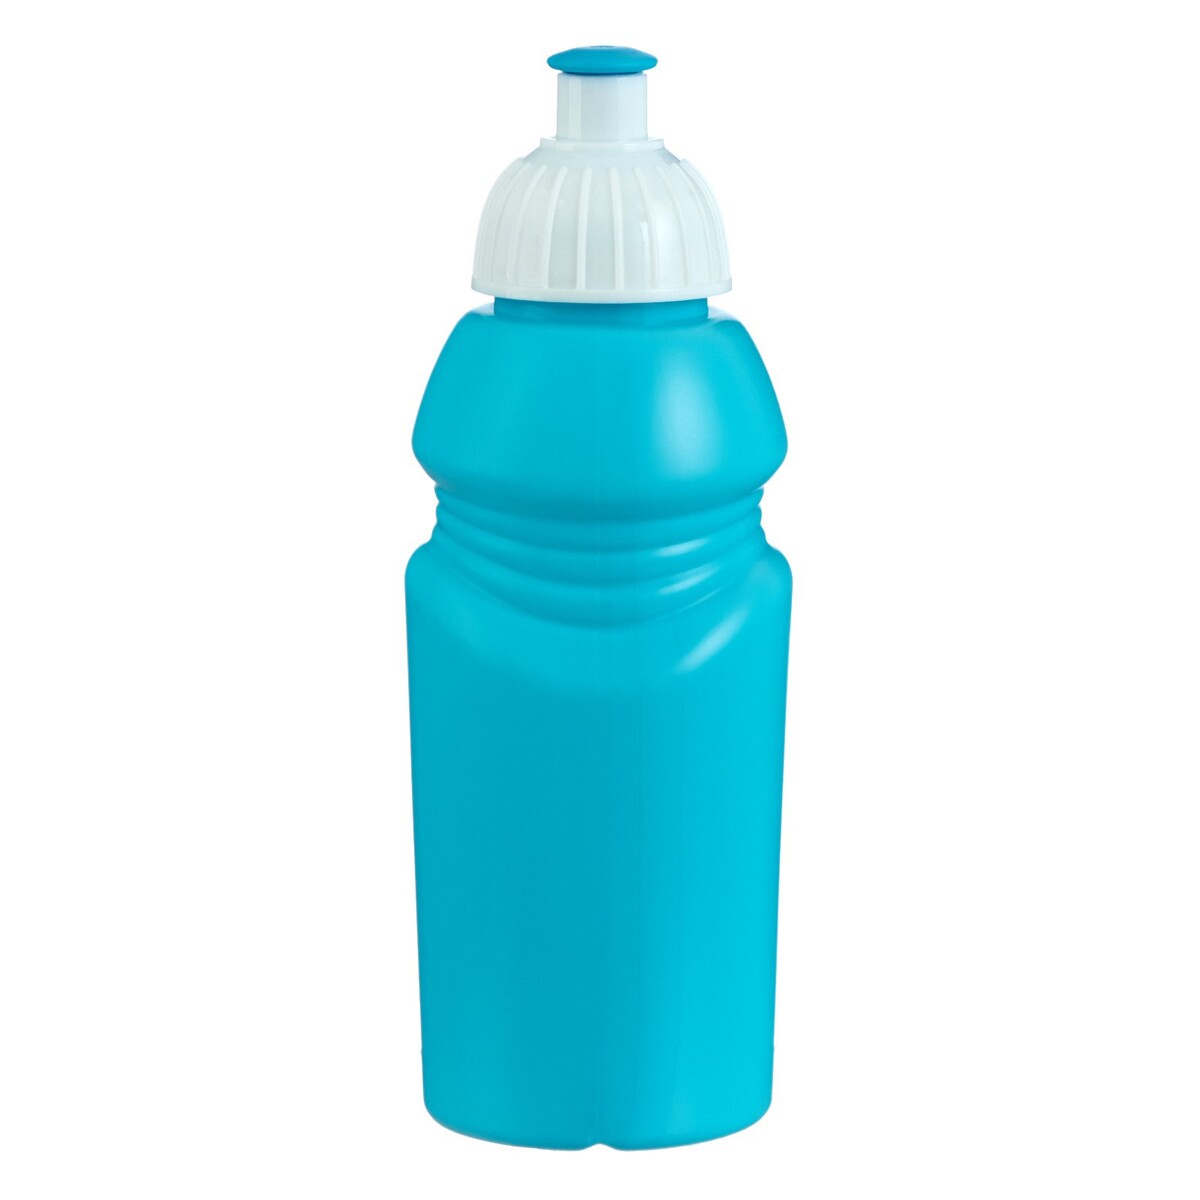 Бутылка для воды велосипедная, 400 мл, с соской, 18 х 6.2 х 6.2 см, голубая бутылка тритановая арт 720 1000 1000 мл голубая матовая с ситечком голубой